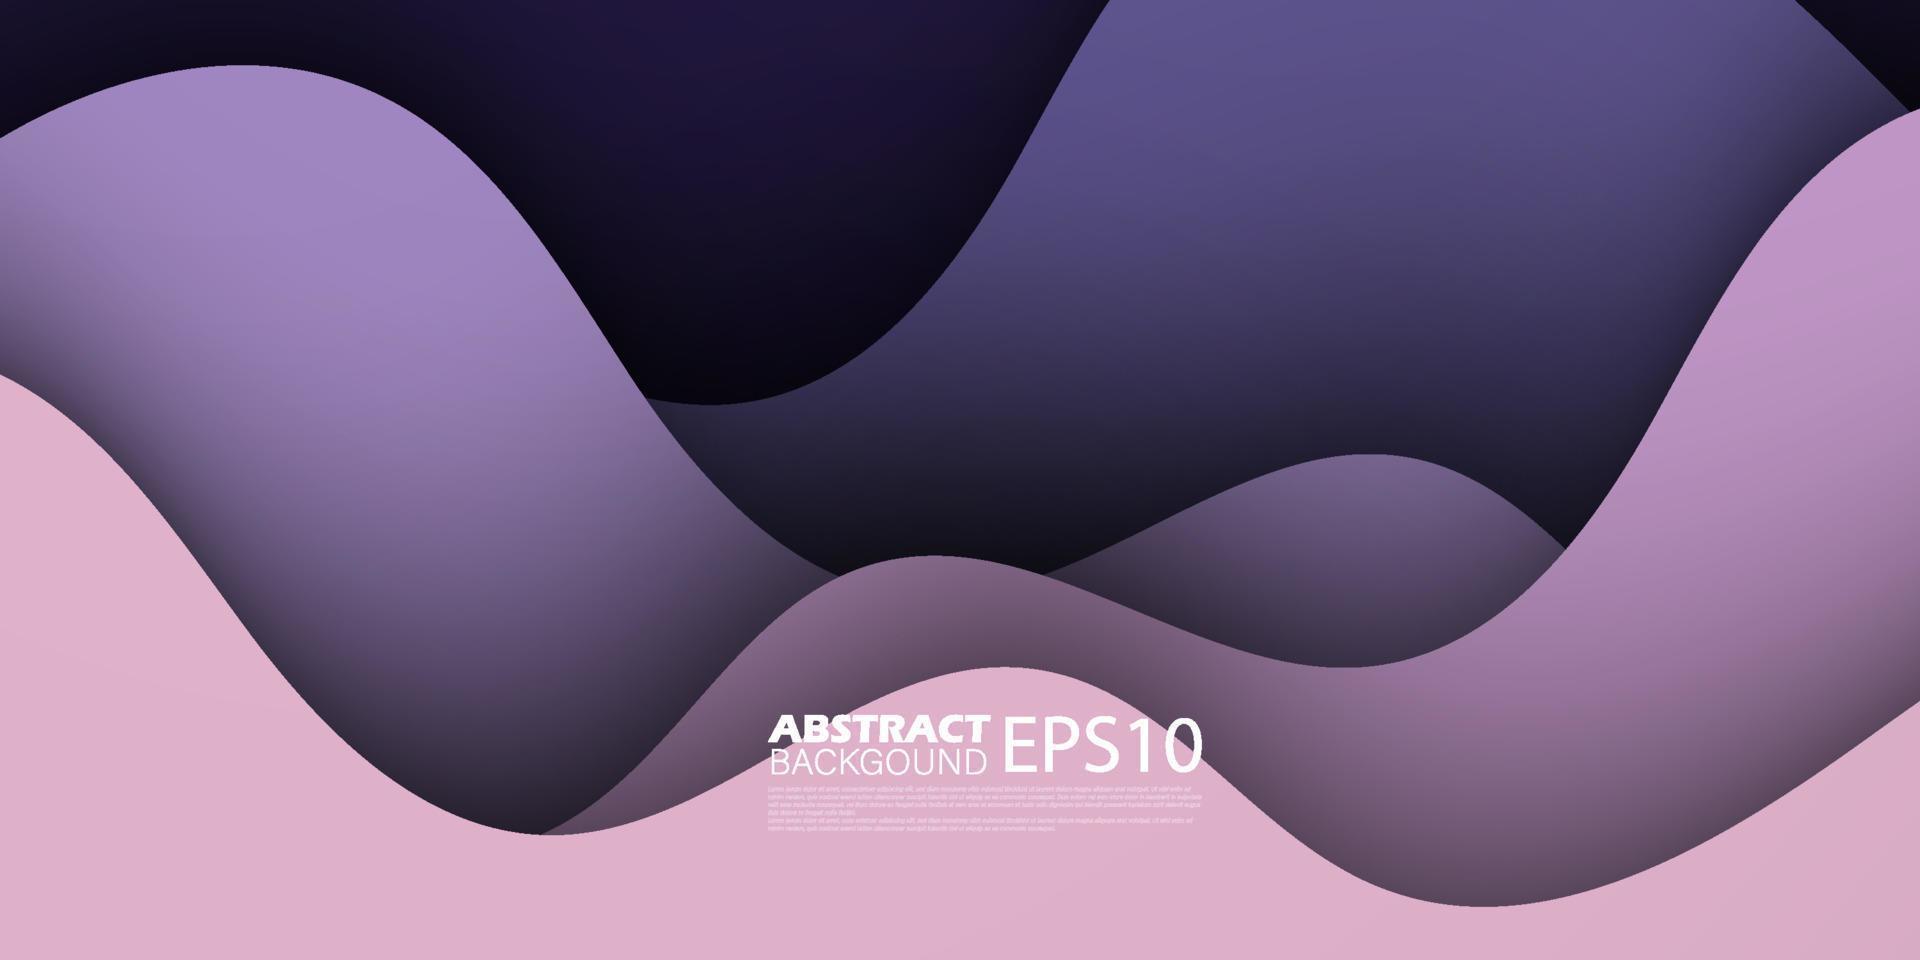 fondo abstracto ondulado colorido futurista de primera calidad con degradado de color púrpura violeta lila suave en el fondo. eps10 vector